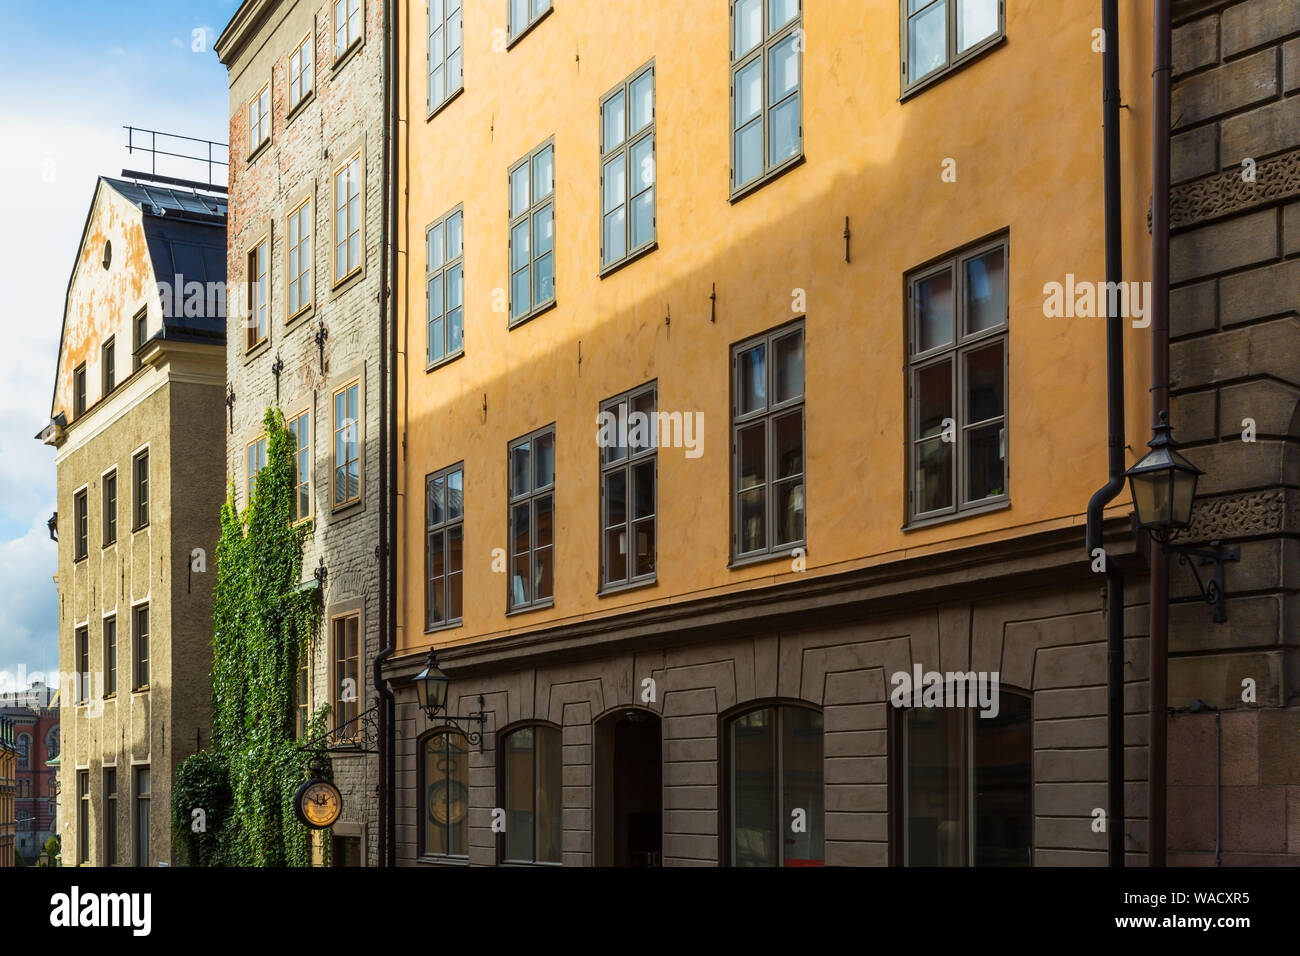 Vecchio stile architettonico di pietra da taglio, in mattoni e stucco e facciate con file di windows, Stoccolma, Svezia, Europa Foto Stock